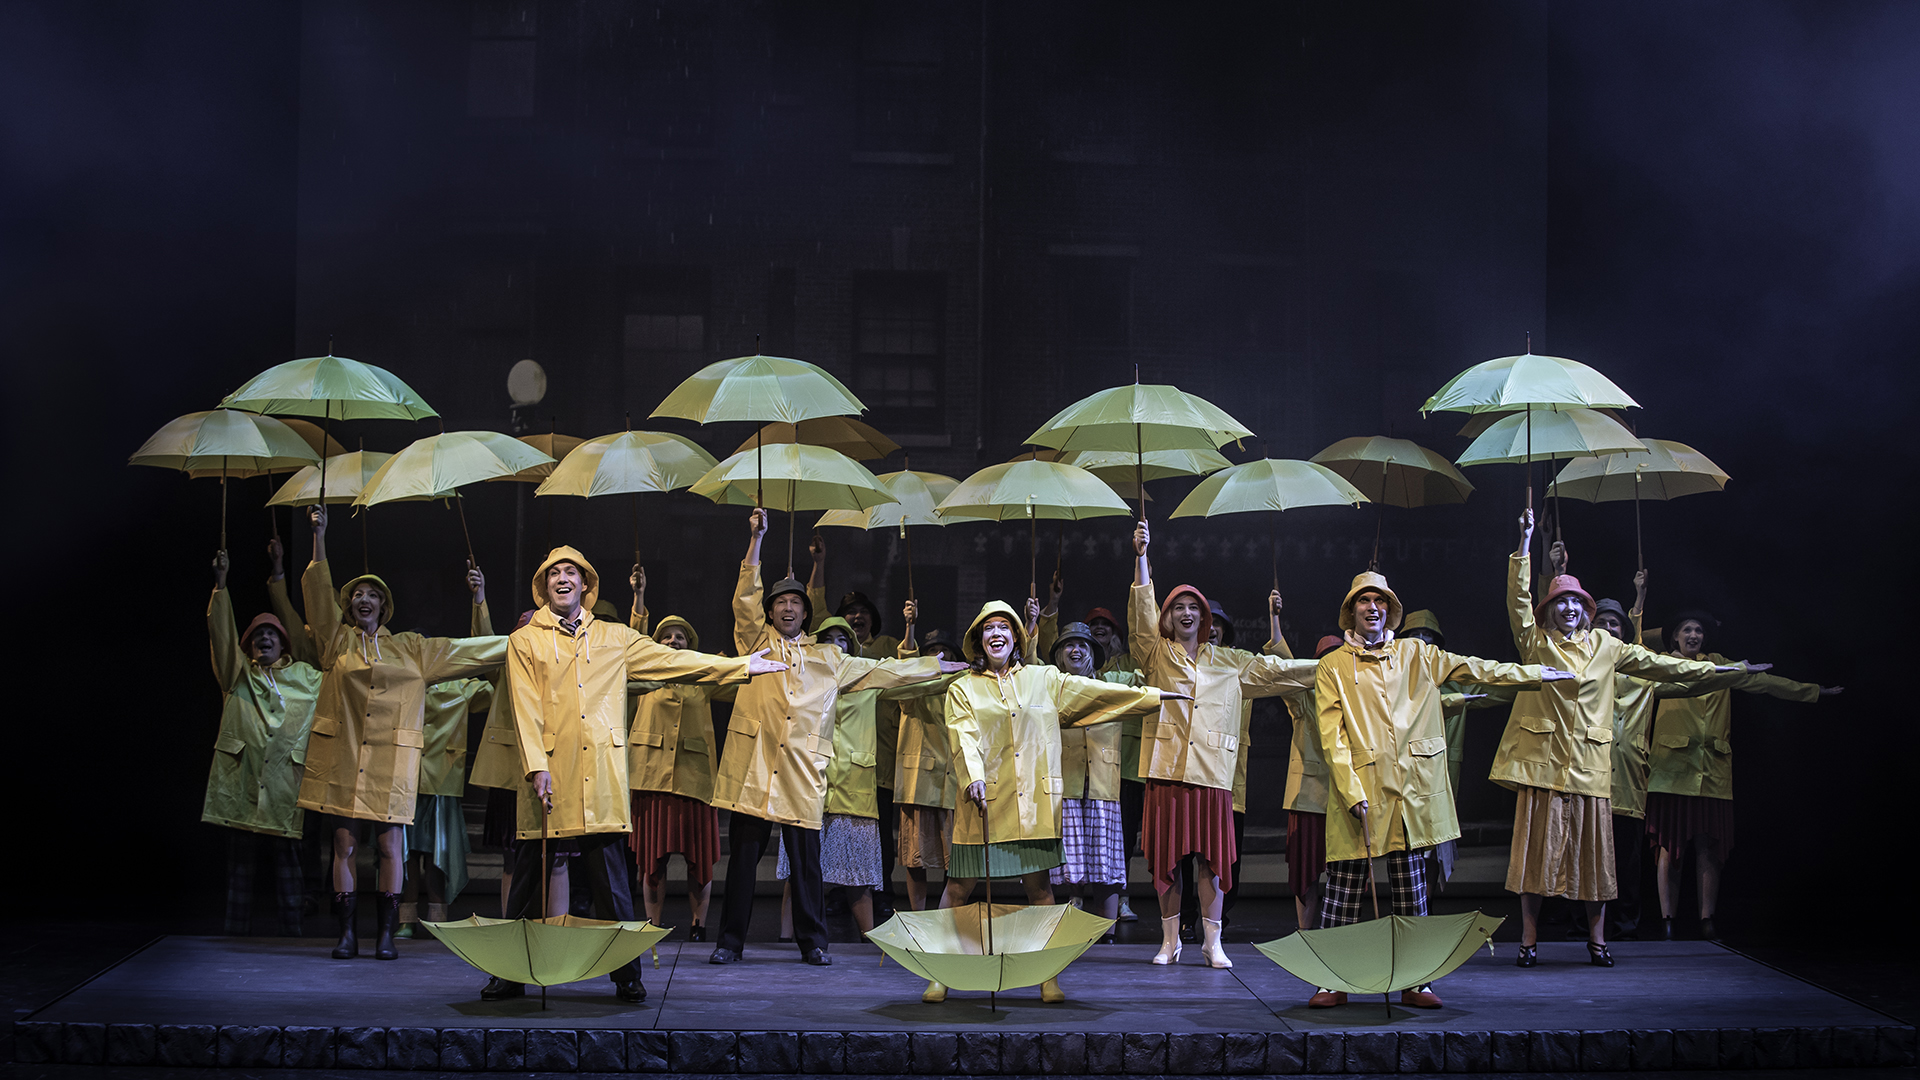 Klickbar bild Singin' in the rain. Stor ensemble i gula regnrockar med gula paraplyer på stora scenen.